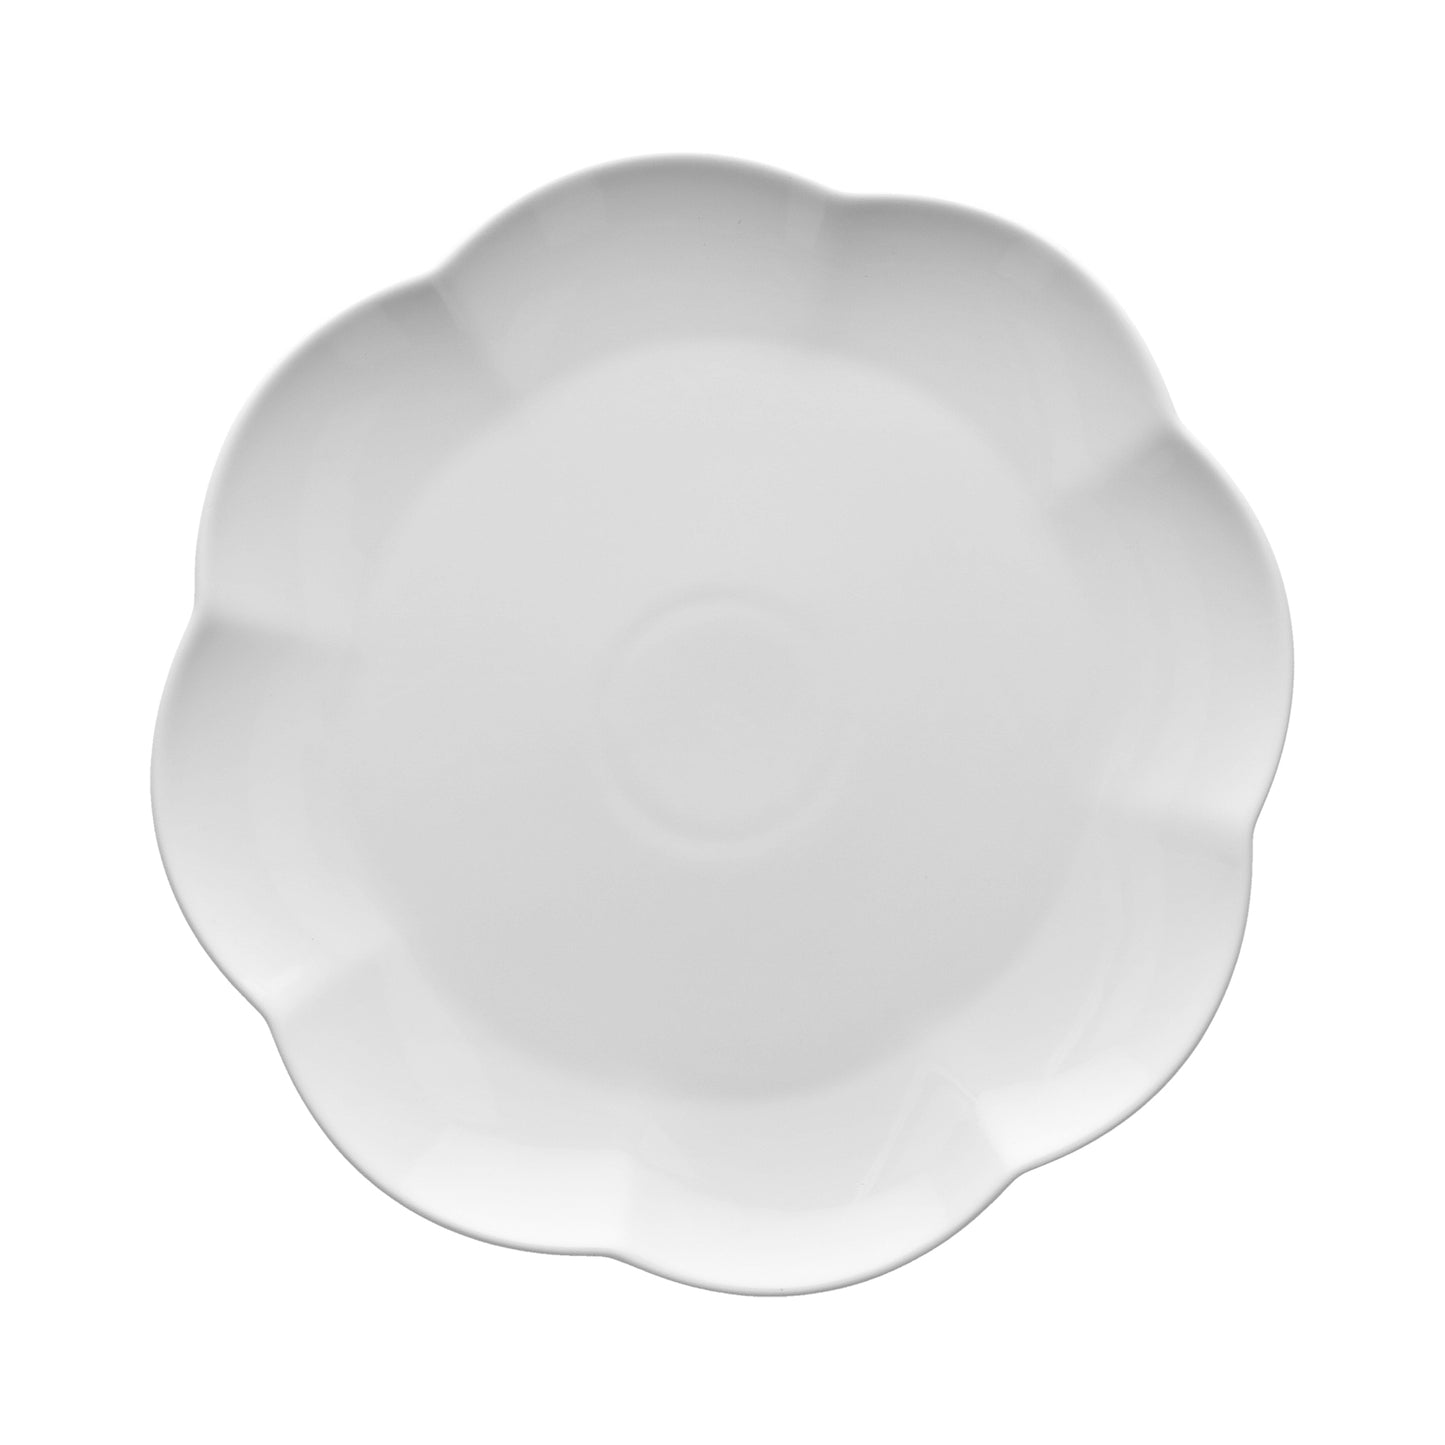 Set di 6 piatti piani in porcellana di colore bianco diam. 26 x 2,5h Lavabile in lavastoviglie Utilizzabile in microonde Utilizzabile in forno tradizionale. In negozio e online su tuttochic.it